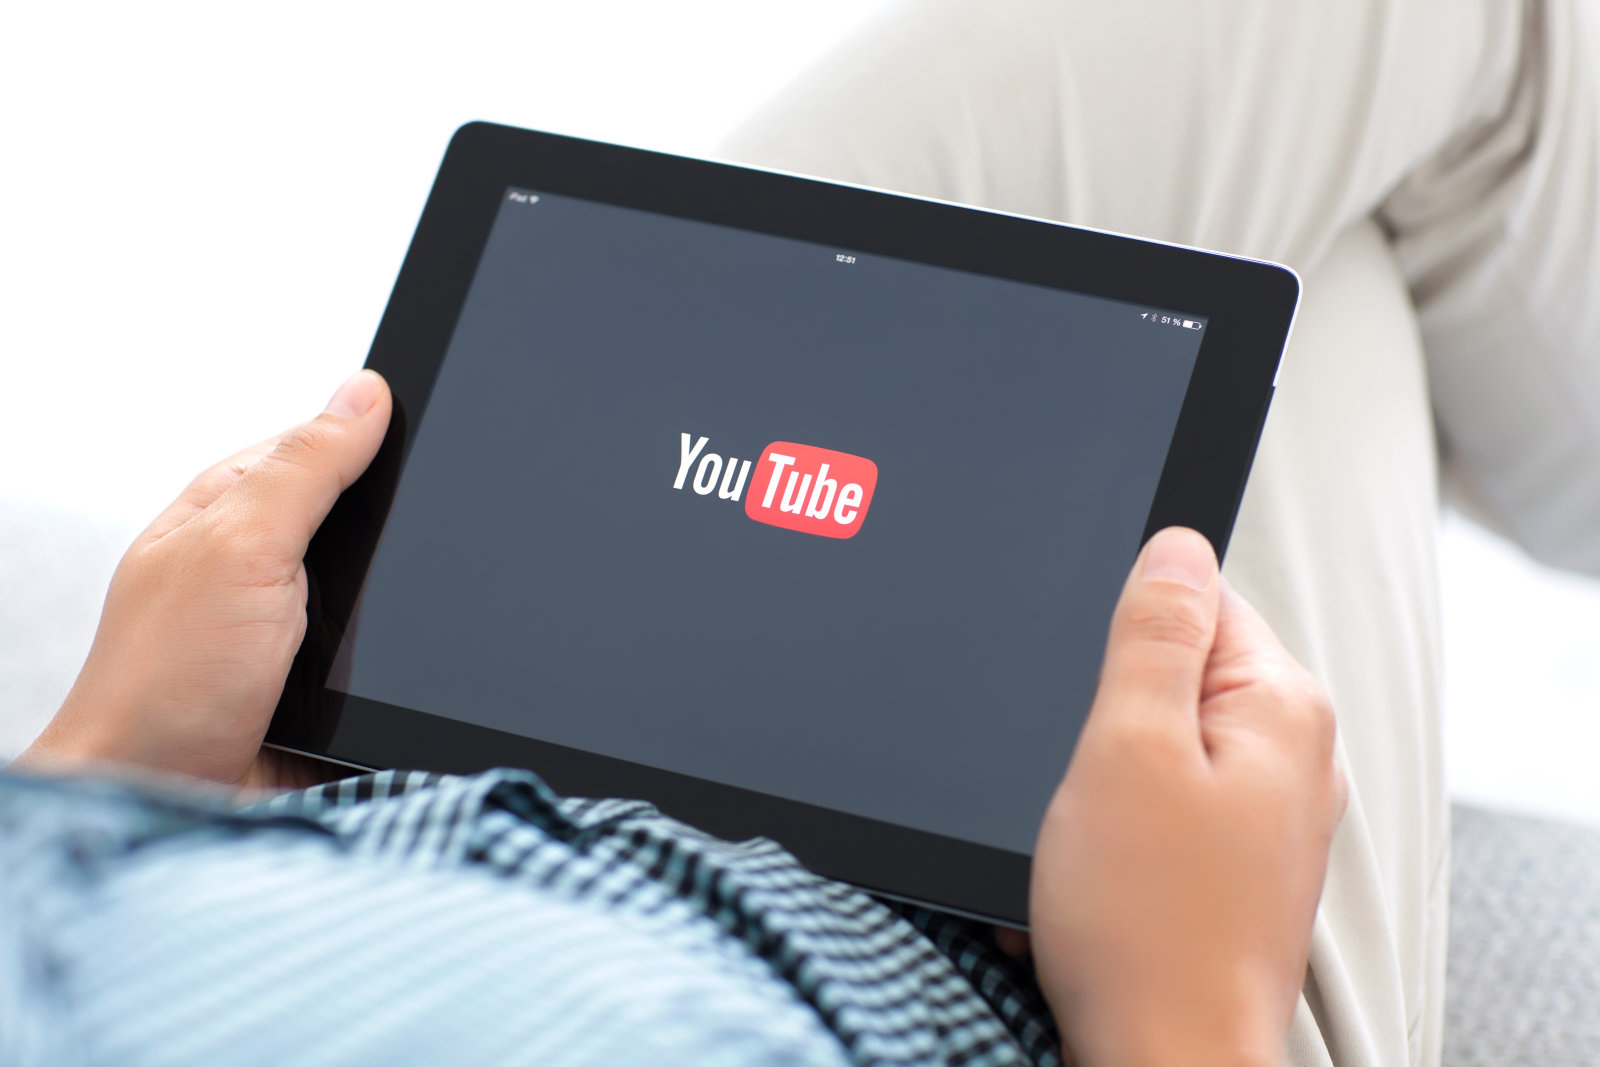 Ежедневно пользователи YouTube просматривают 1 млрд часов видео